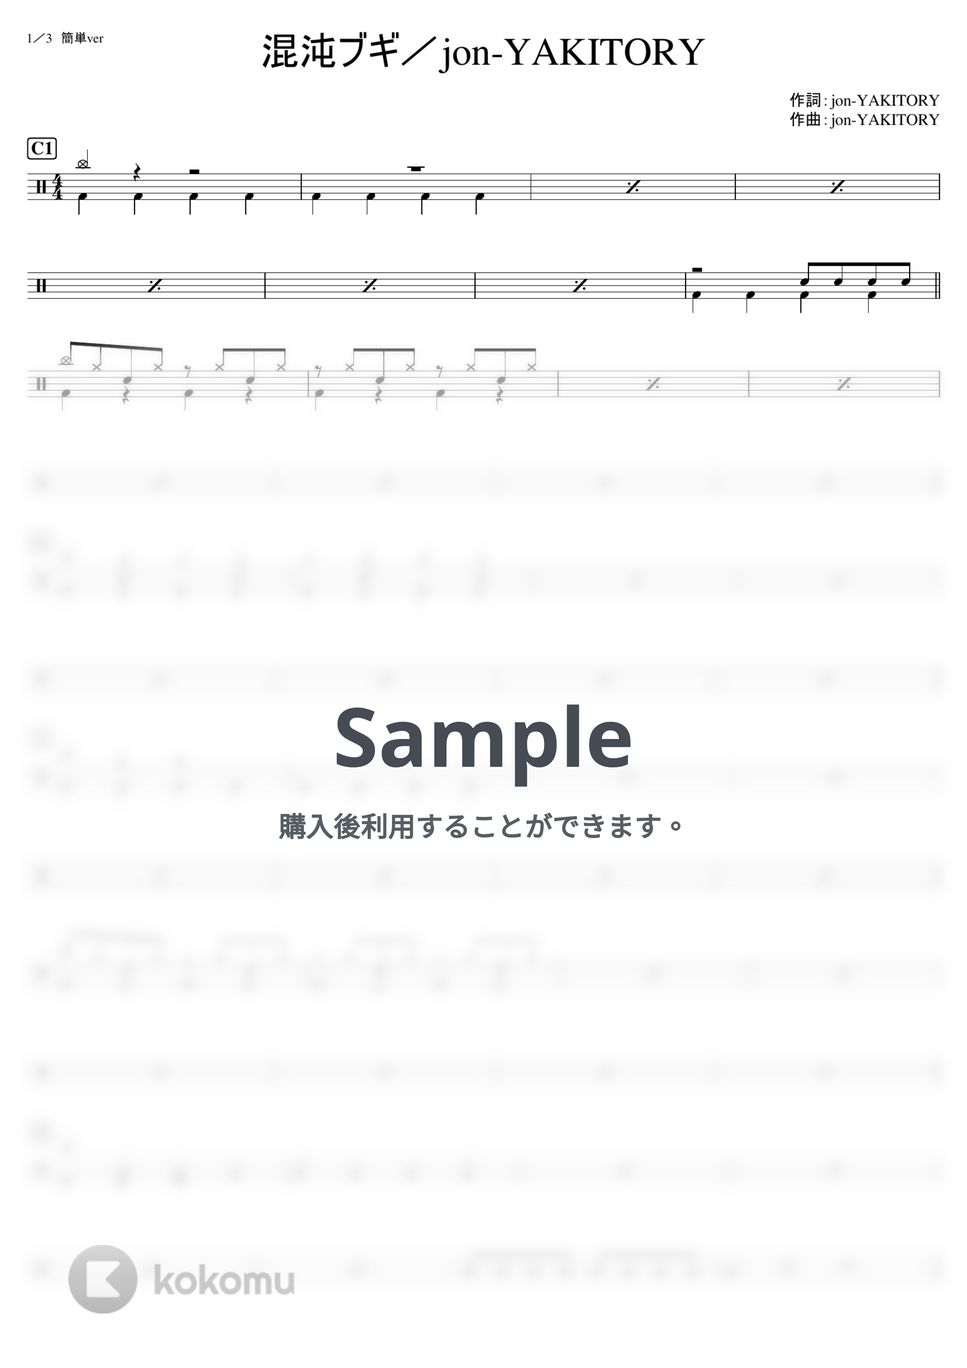 jon-YAKITORY - 混沌ブギ (初級) by kamishinjo-drum-school